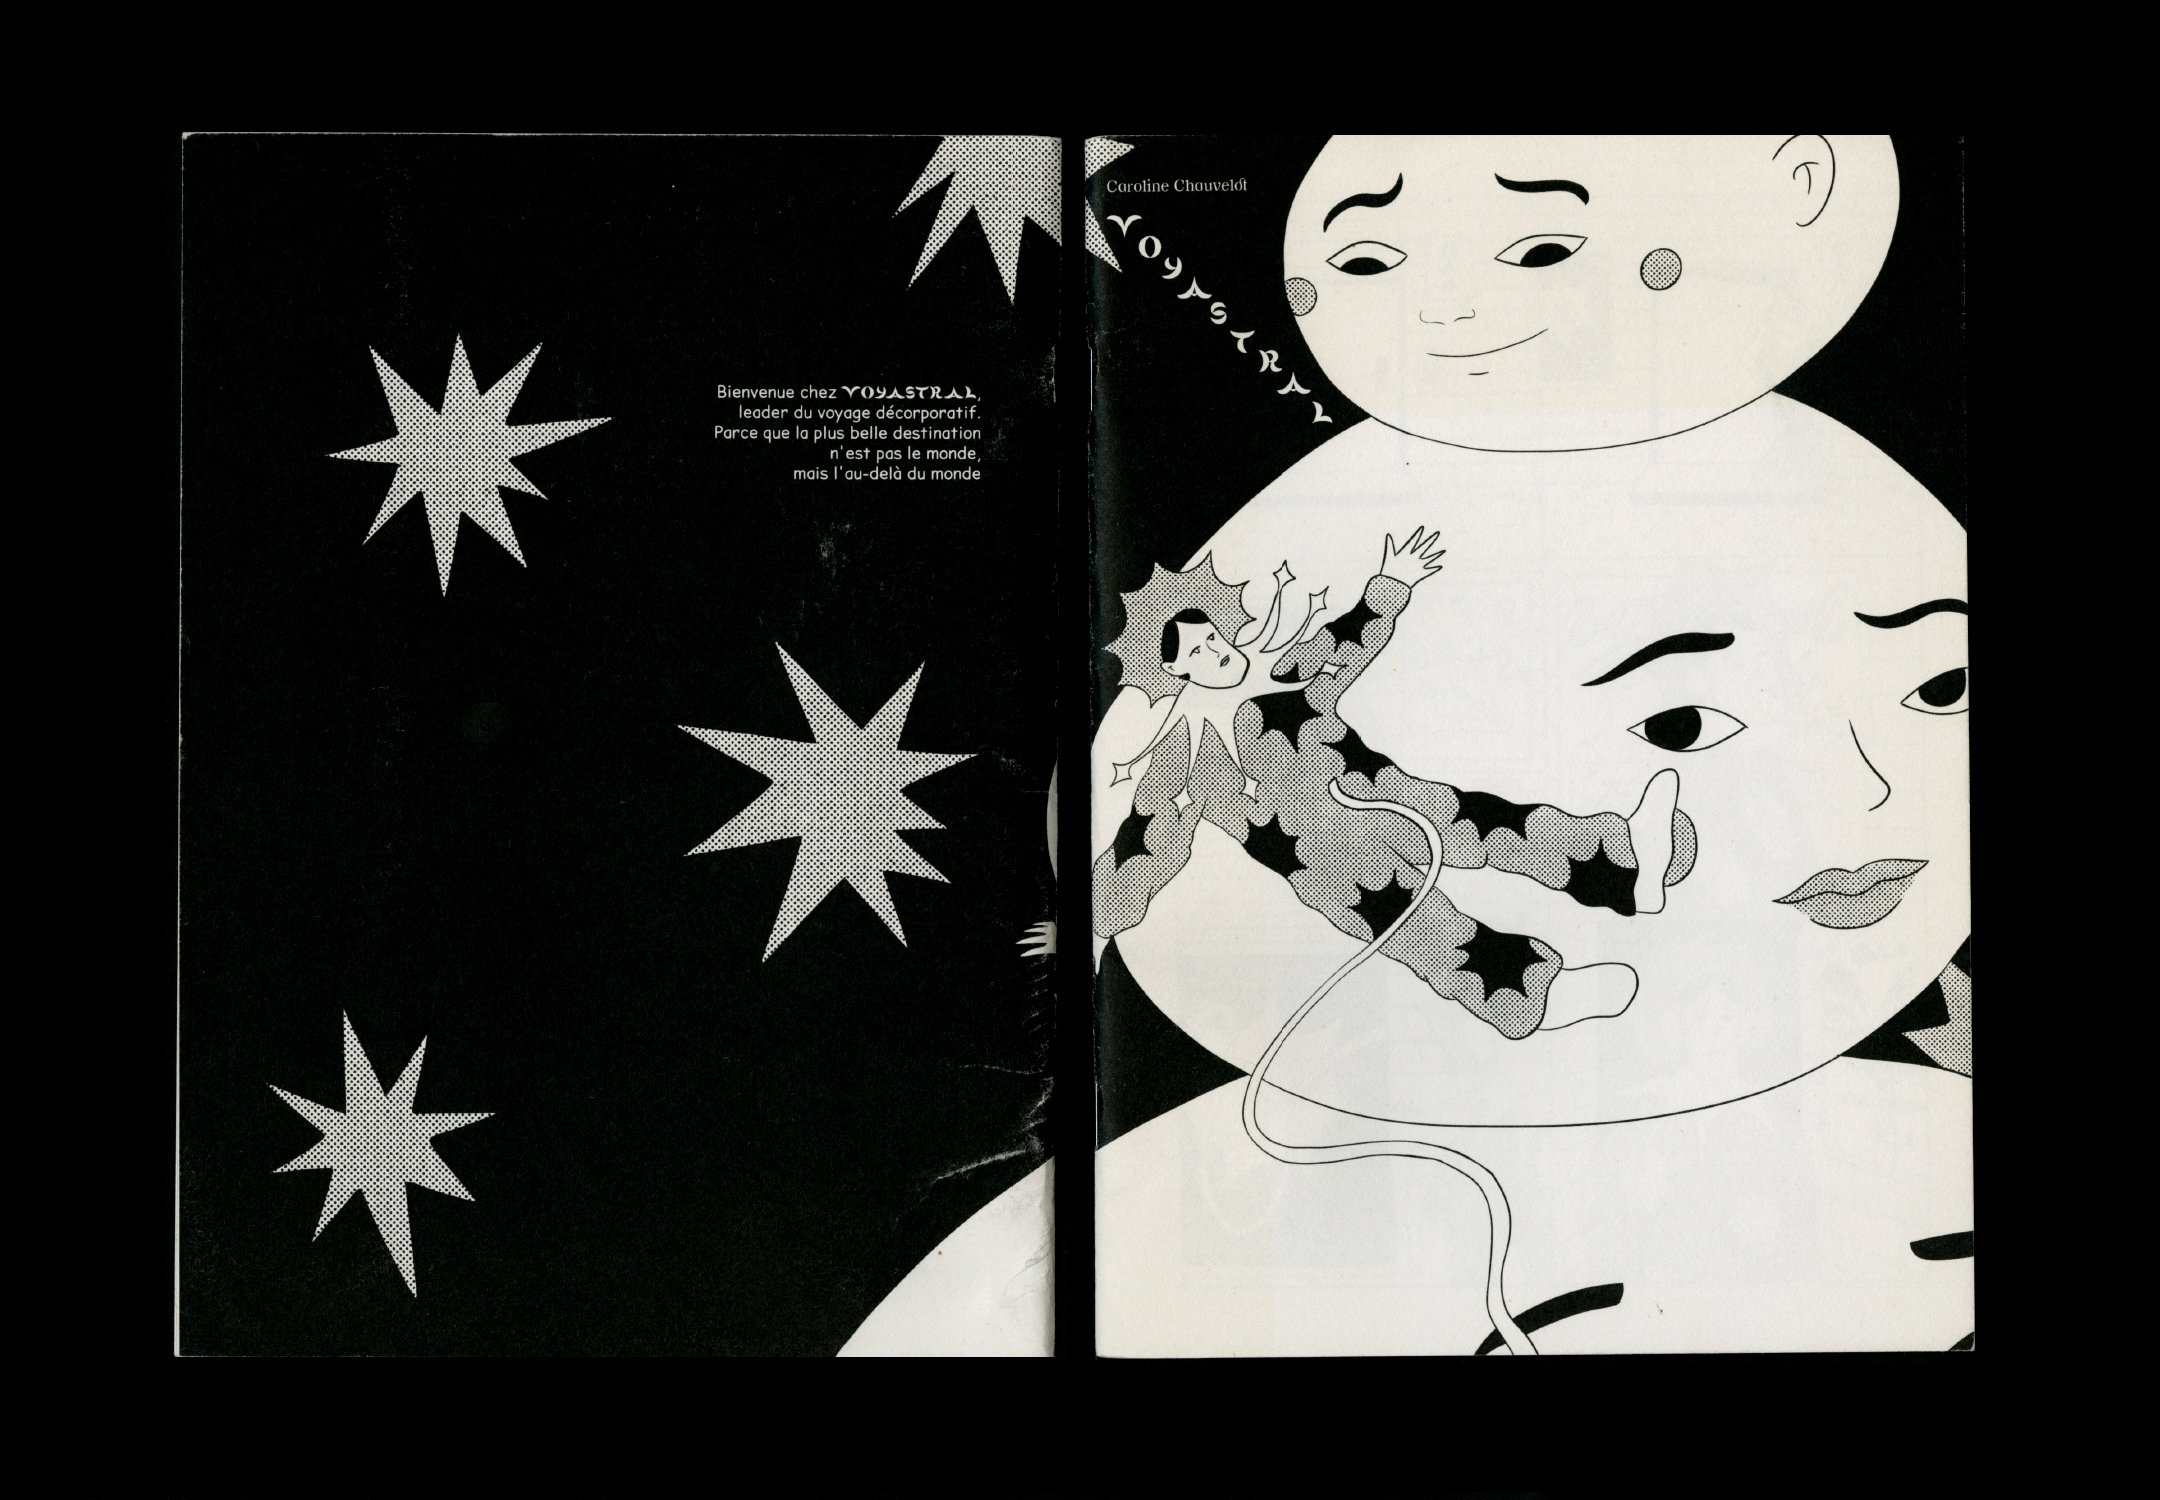 Couverture et quatrième de couverture en noir et blanc, avec une illustration et un court texte.